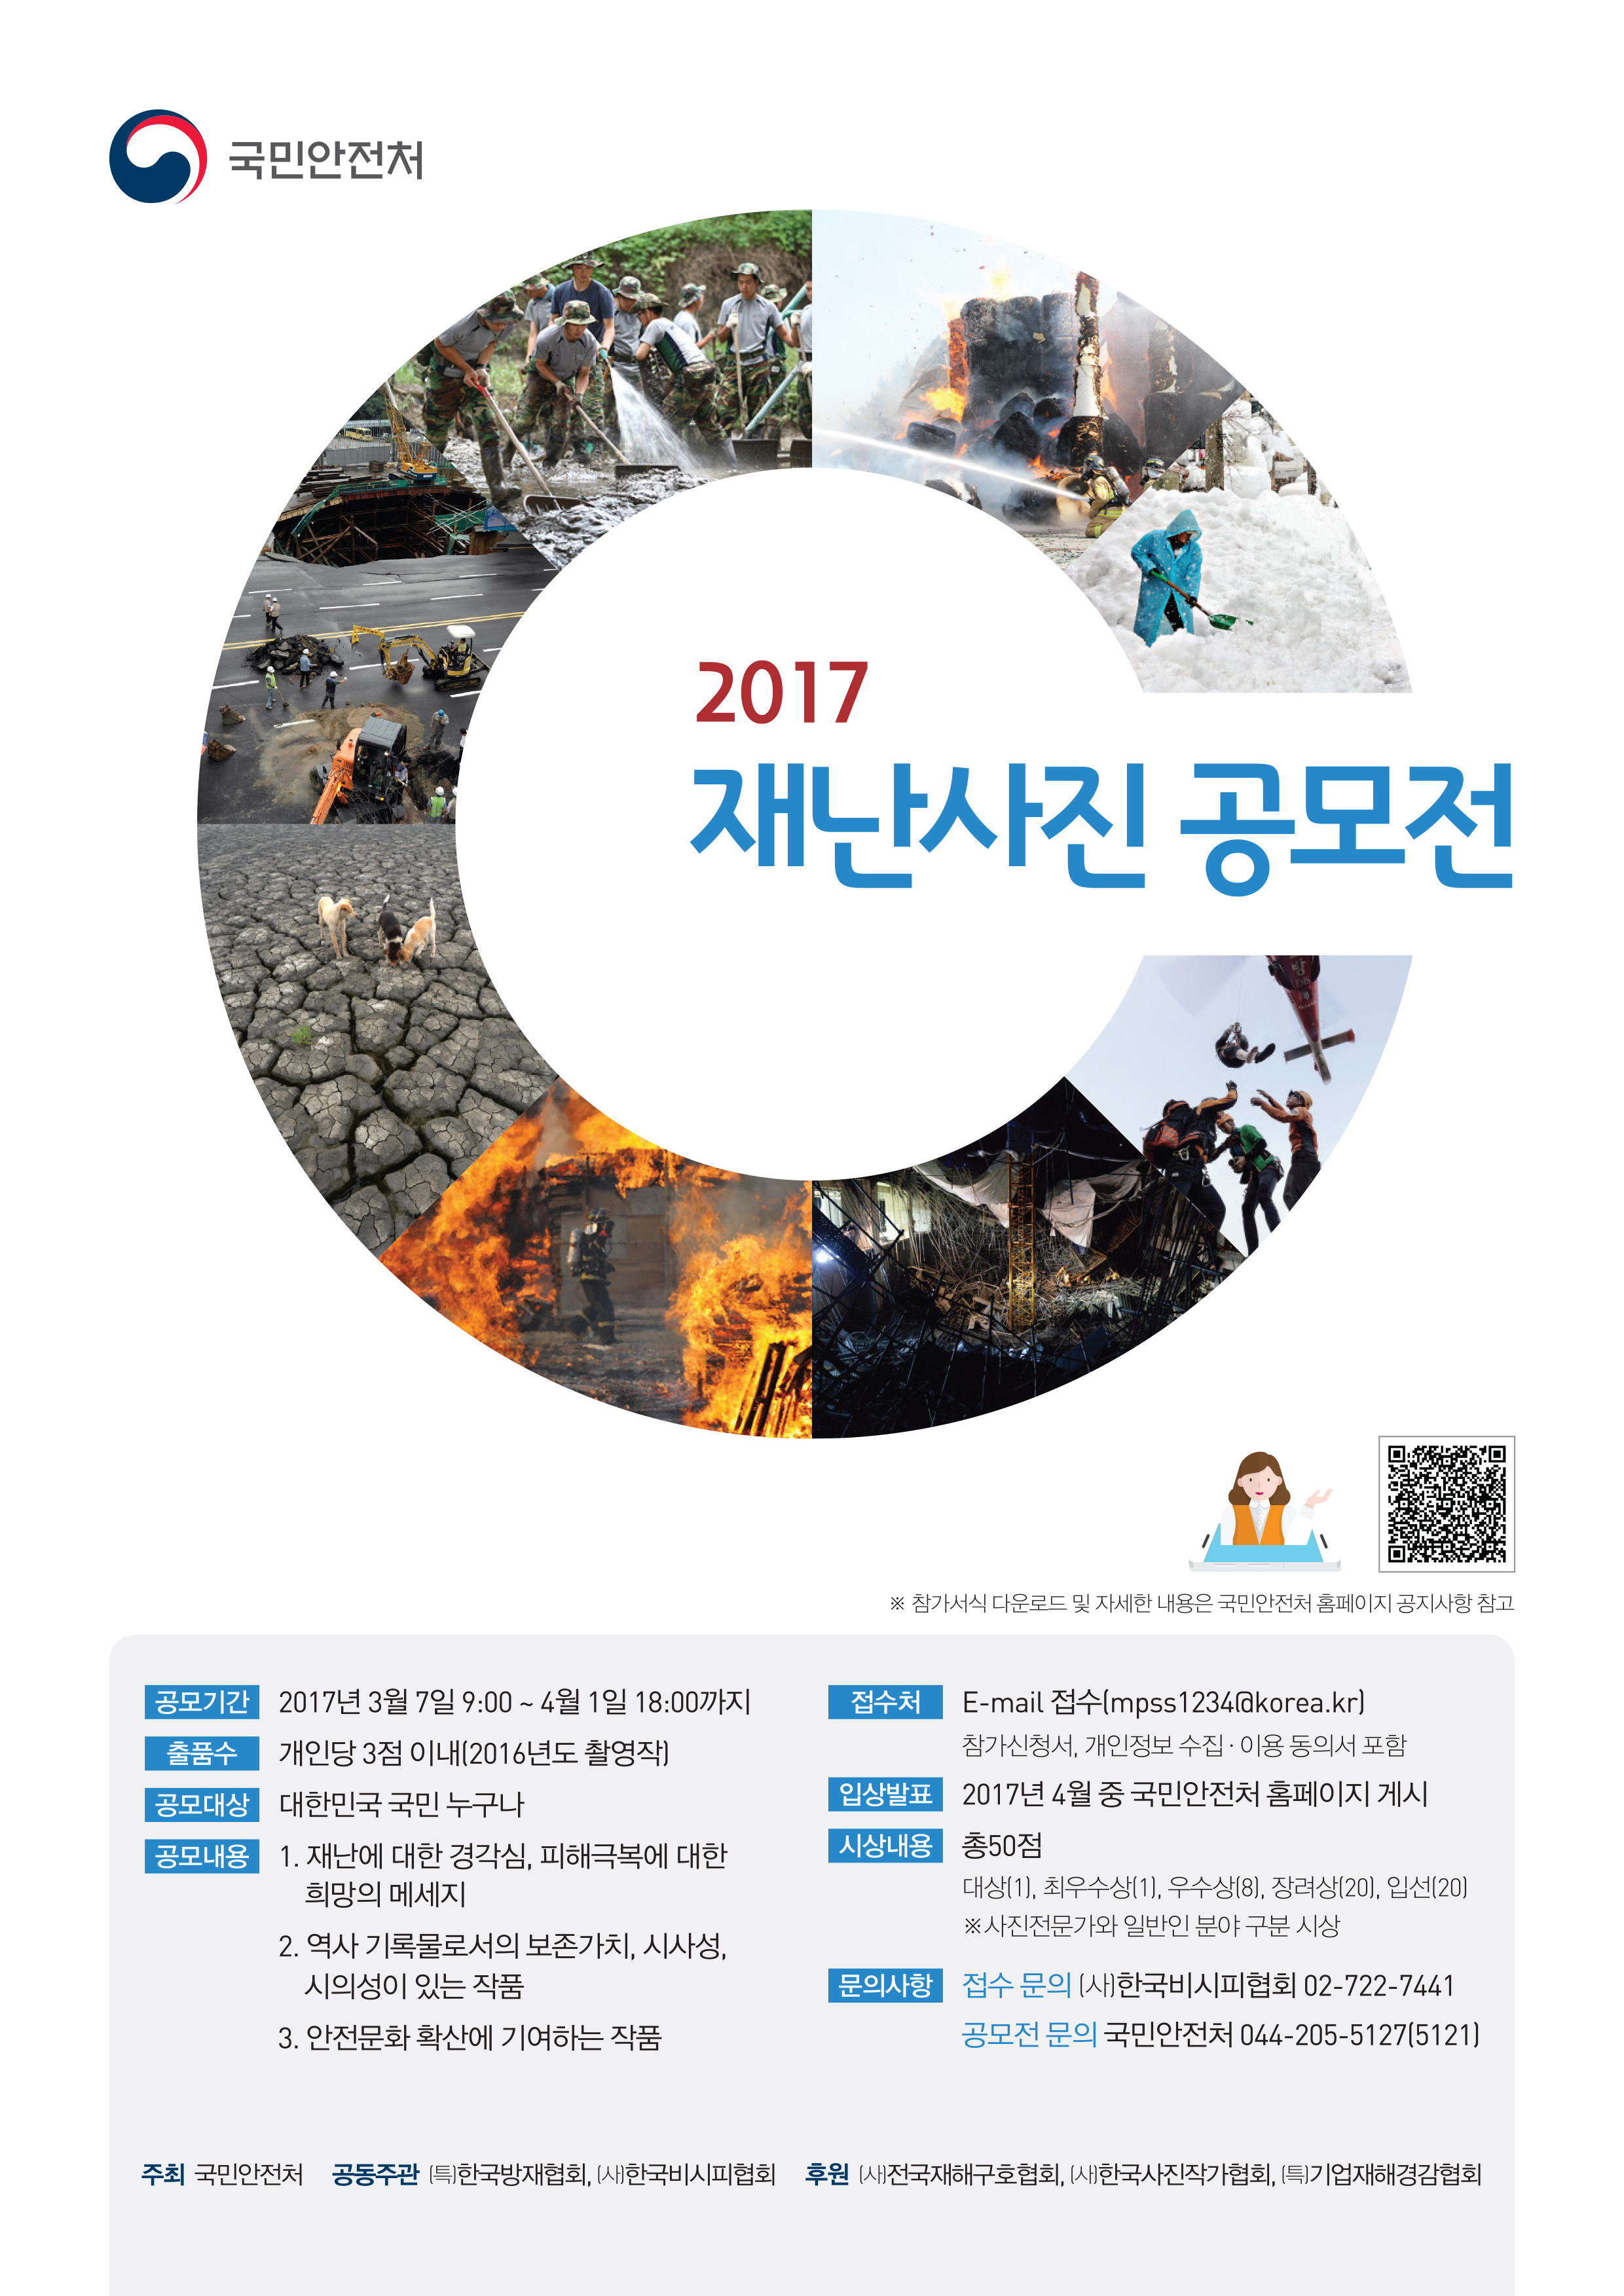 2017년 재난사진 공모전 개최 사진